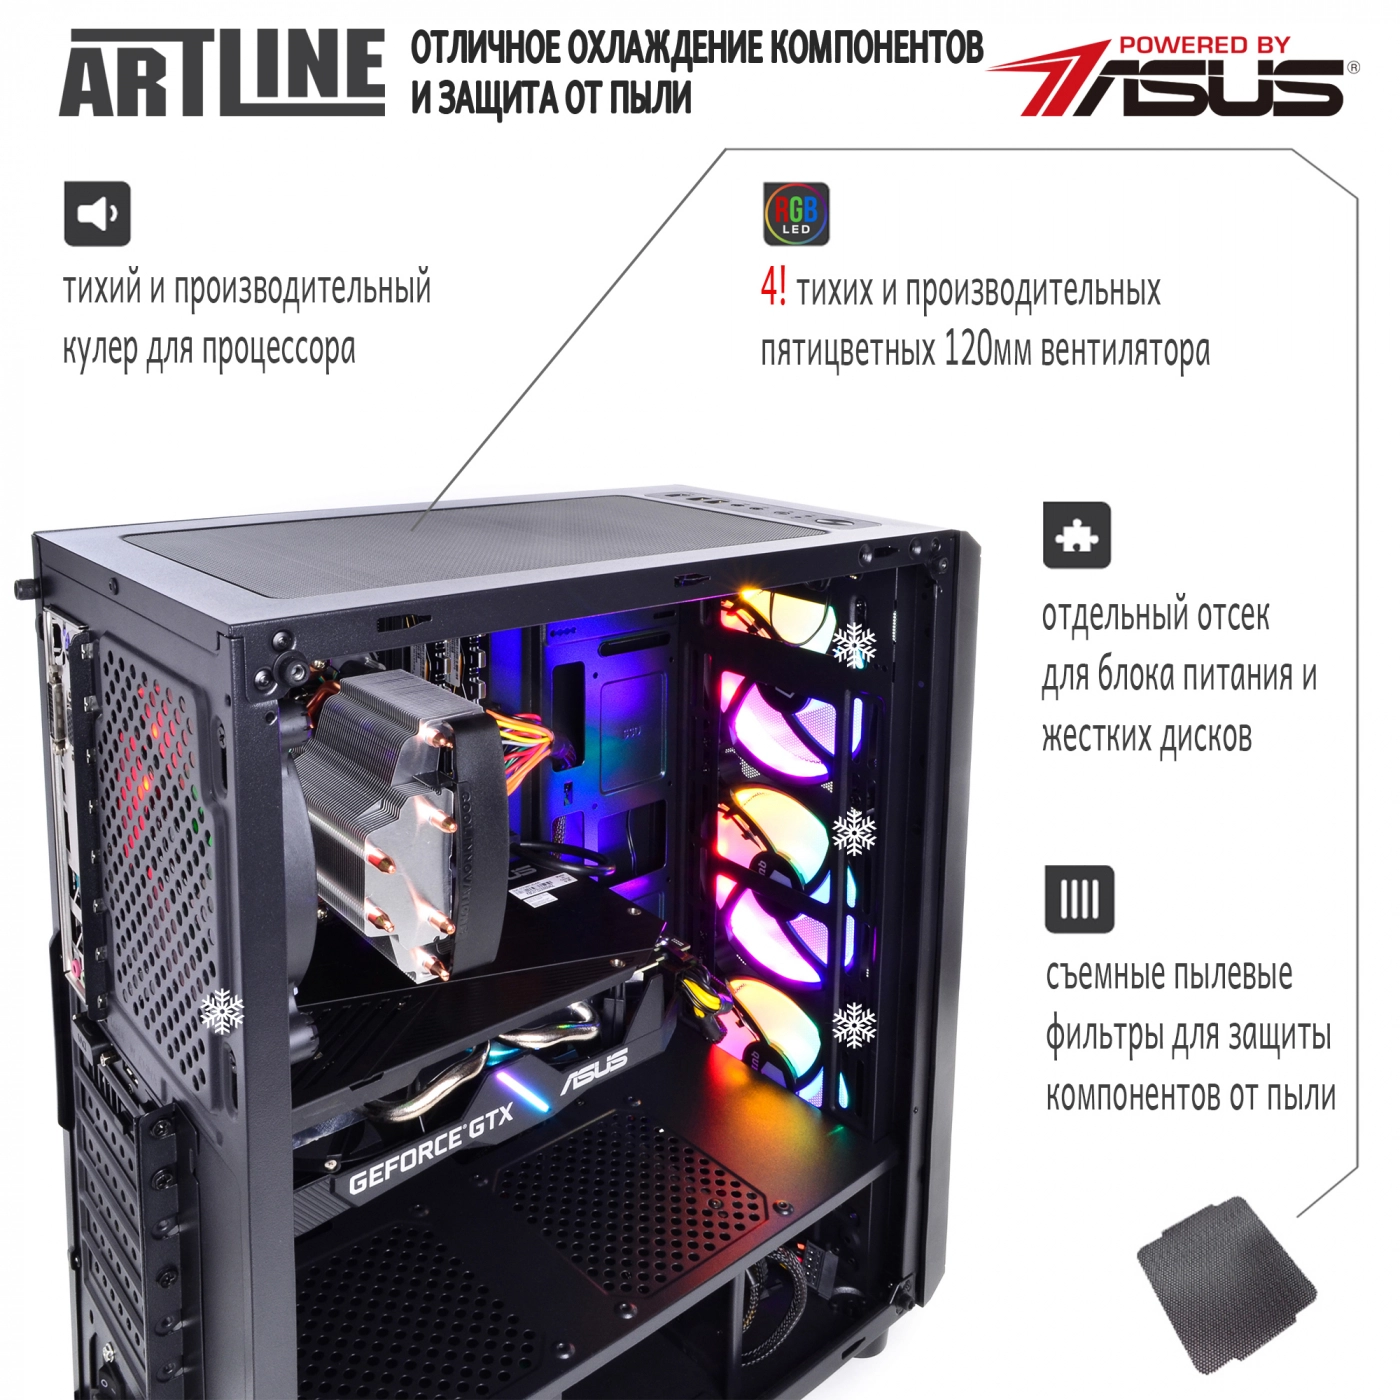 Купить Компьютер ARTLINE Gaming X36v12 - фото 3